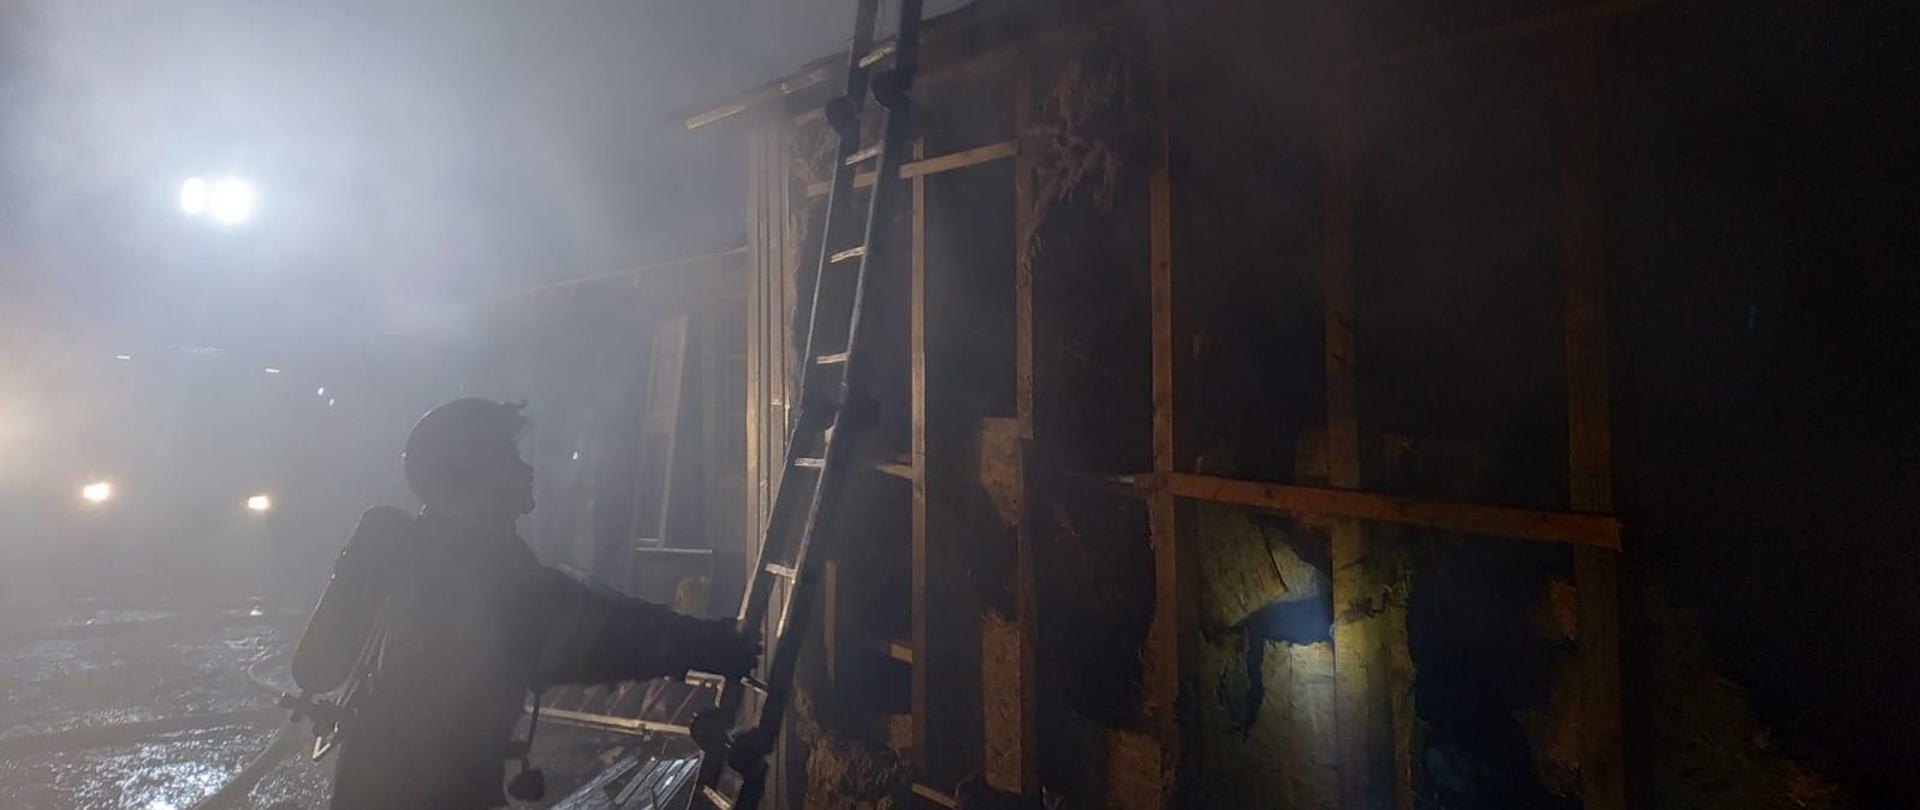 Zdjęcie przedstawia częściowo uszkodzony pożarem budynek stolarni. Ściana budynku jest zdemontowana - widać zniszczoną izolację z wełny. Po środku zdjęcia znajduje się strażak składający drabinę po zakończonej akcji gaśniczej. Zdjęcie wykonane w porze nocnej.